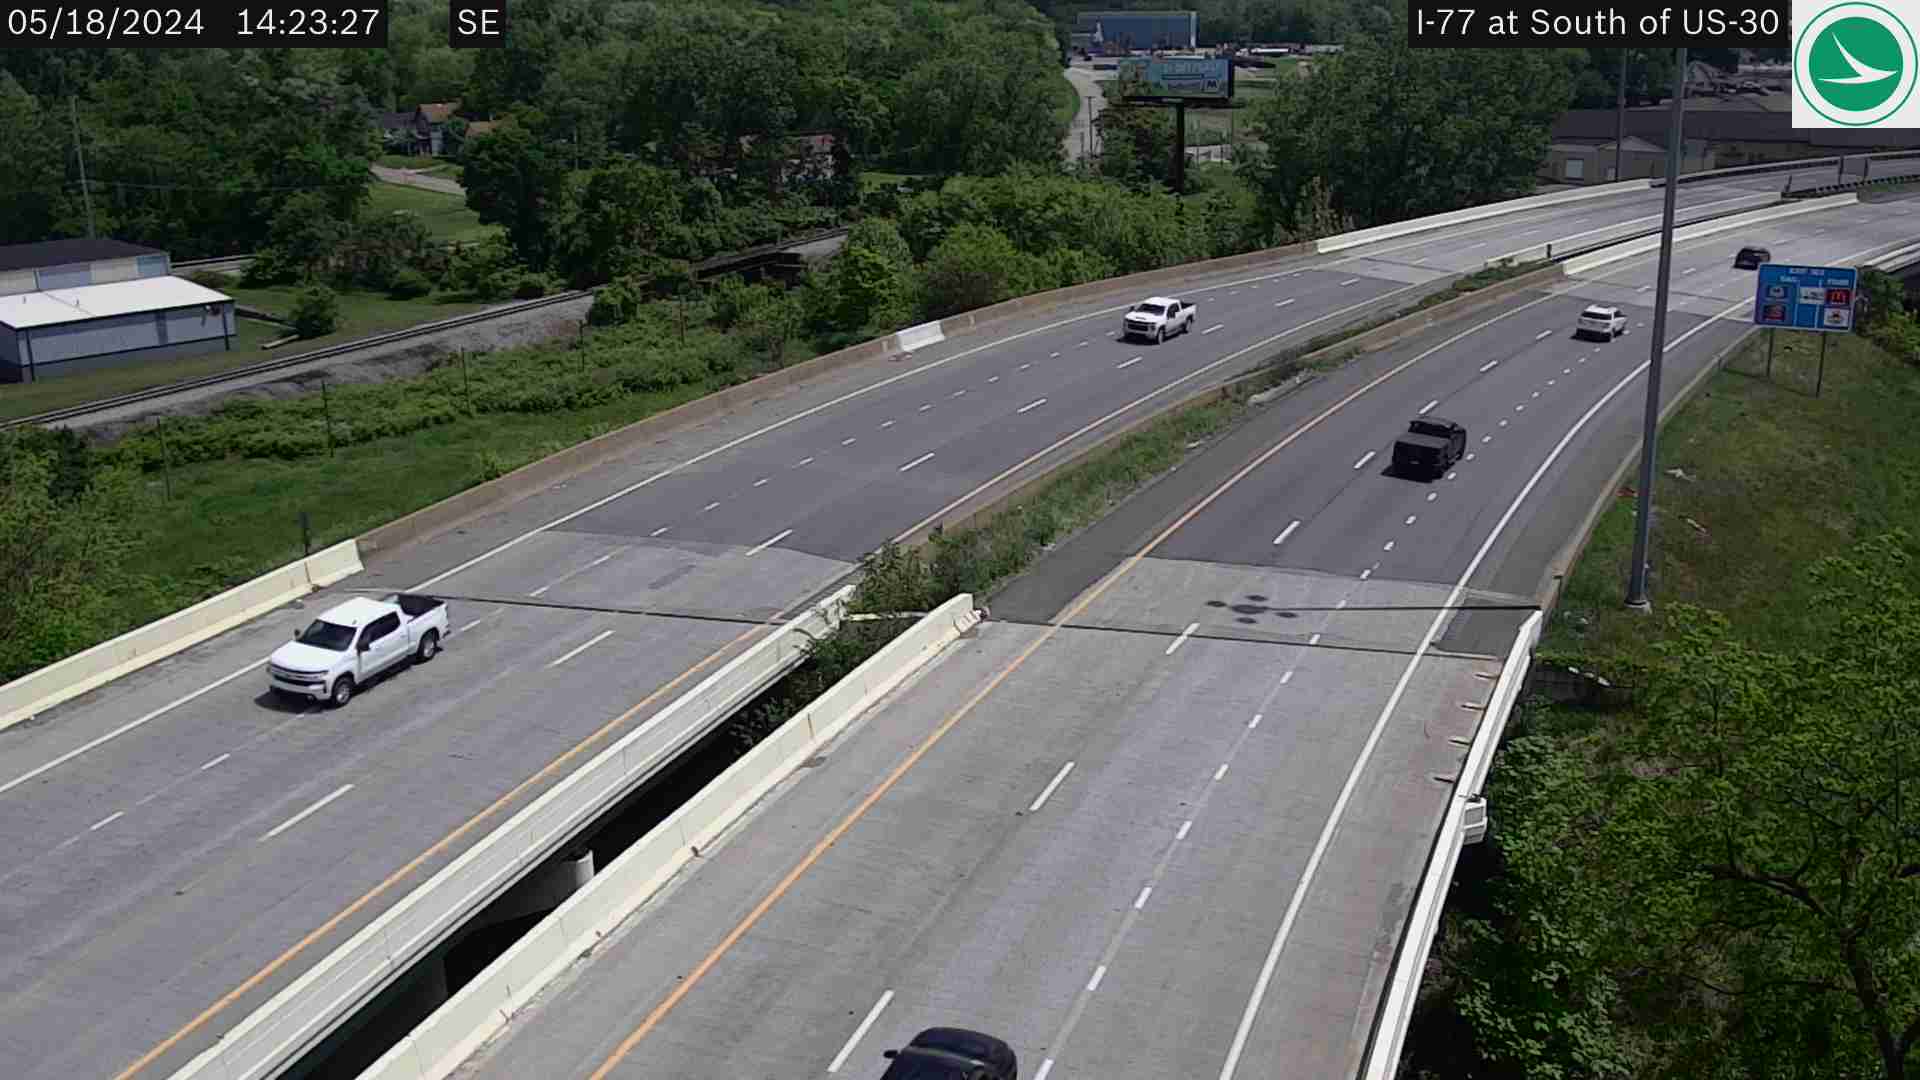 I-77 at US-30